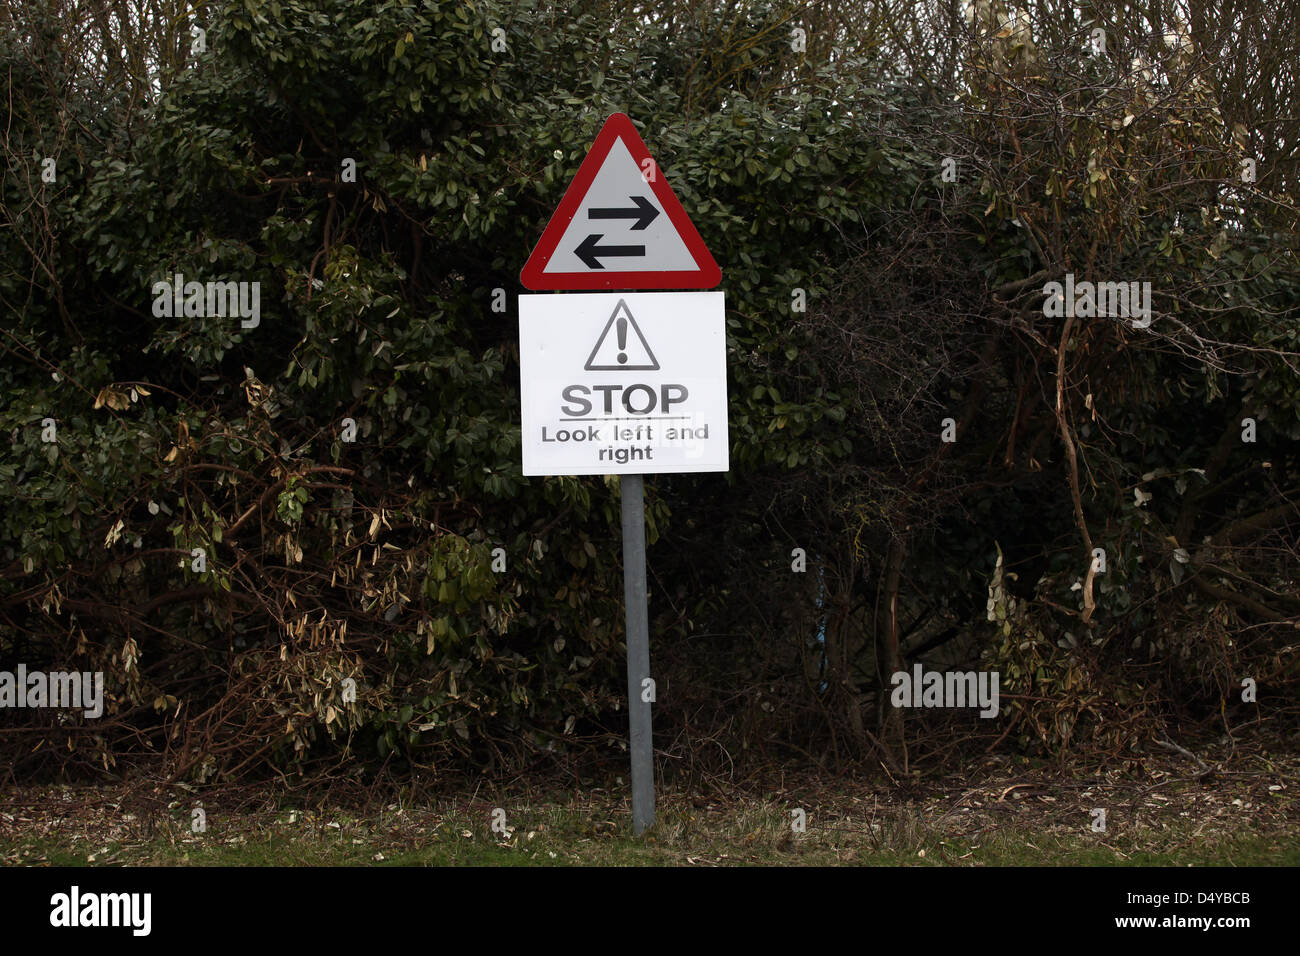 Verkehrszeichen Achtung Gegenverkehr voraus, sagt Fahrer zu stoppen, Blick links und rechts. März 2013 Stockfoto